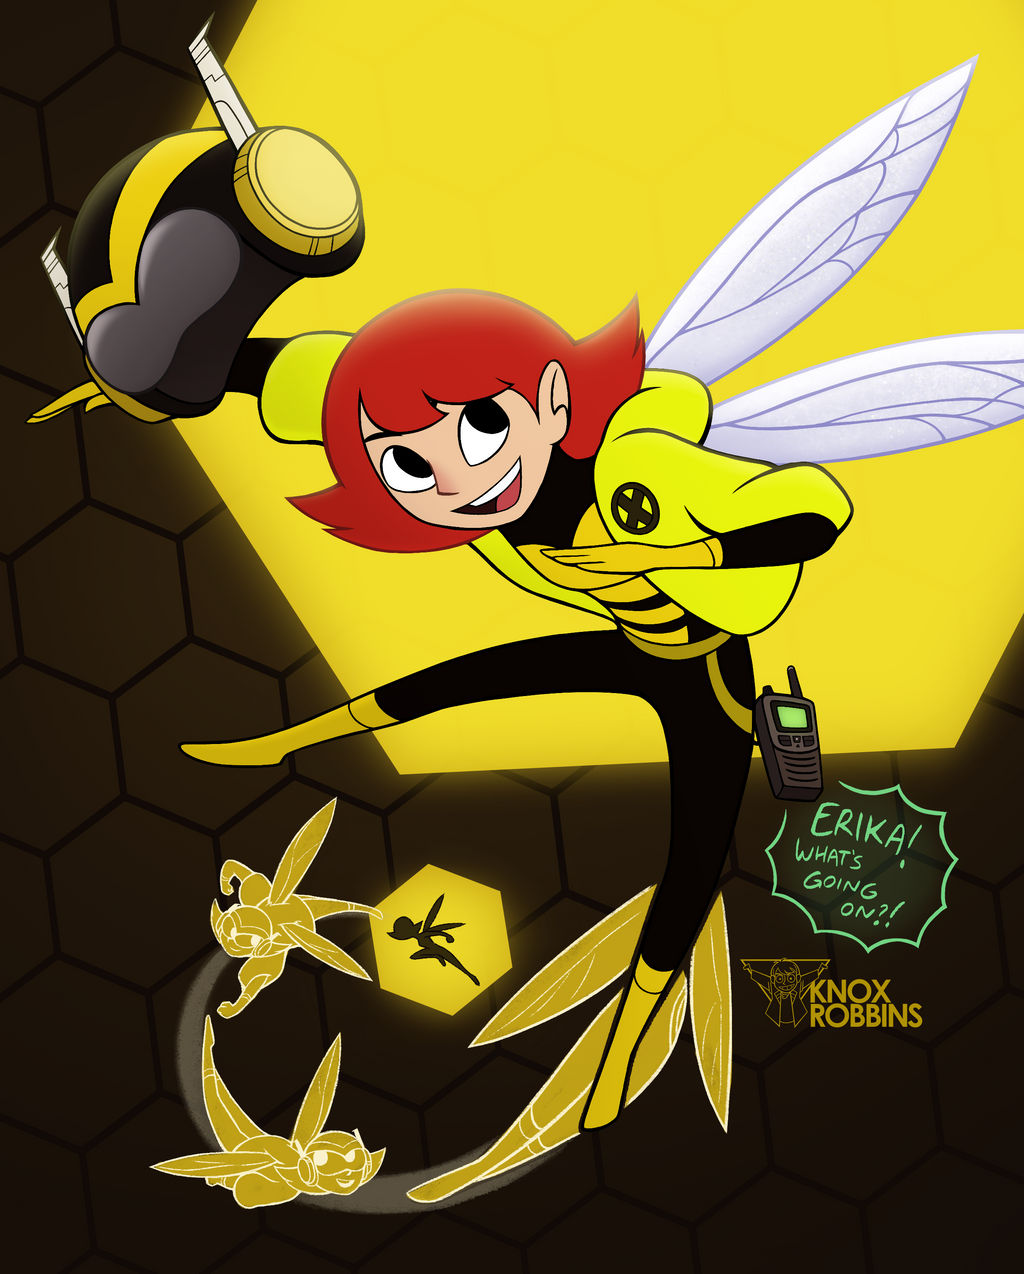 Carta fan-made de Wasp - Marvel Snap by JenBNO on DeviantArt